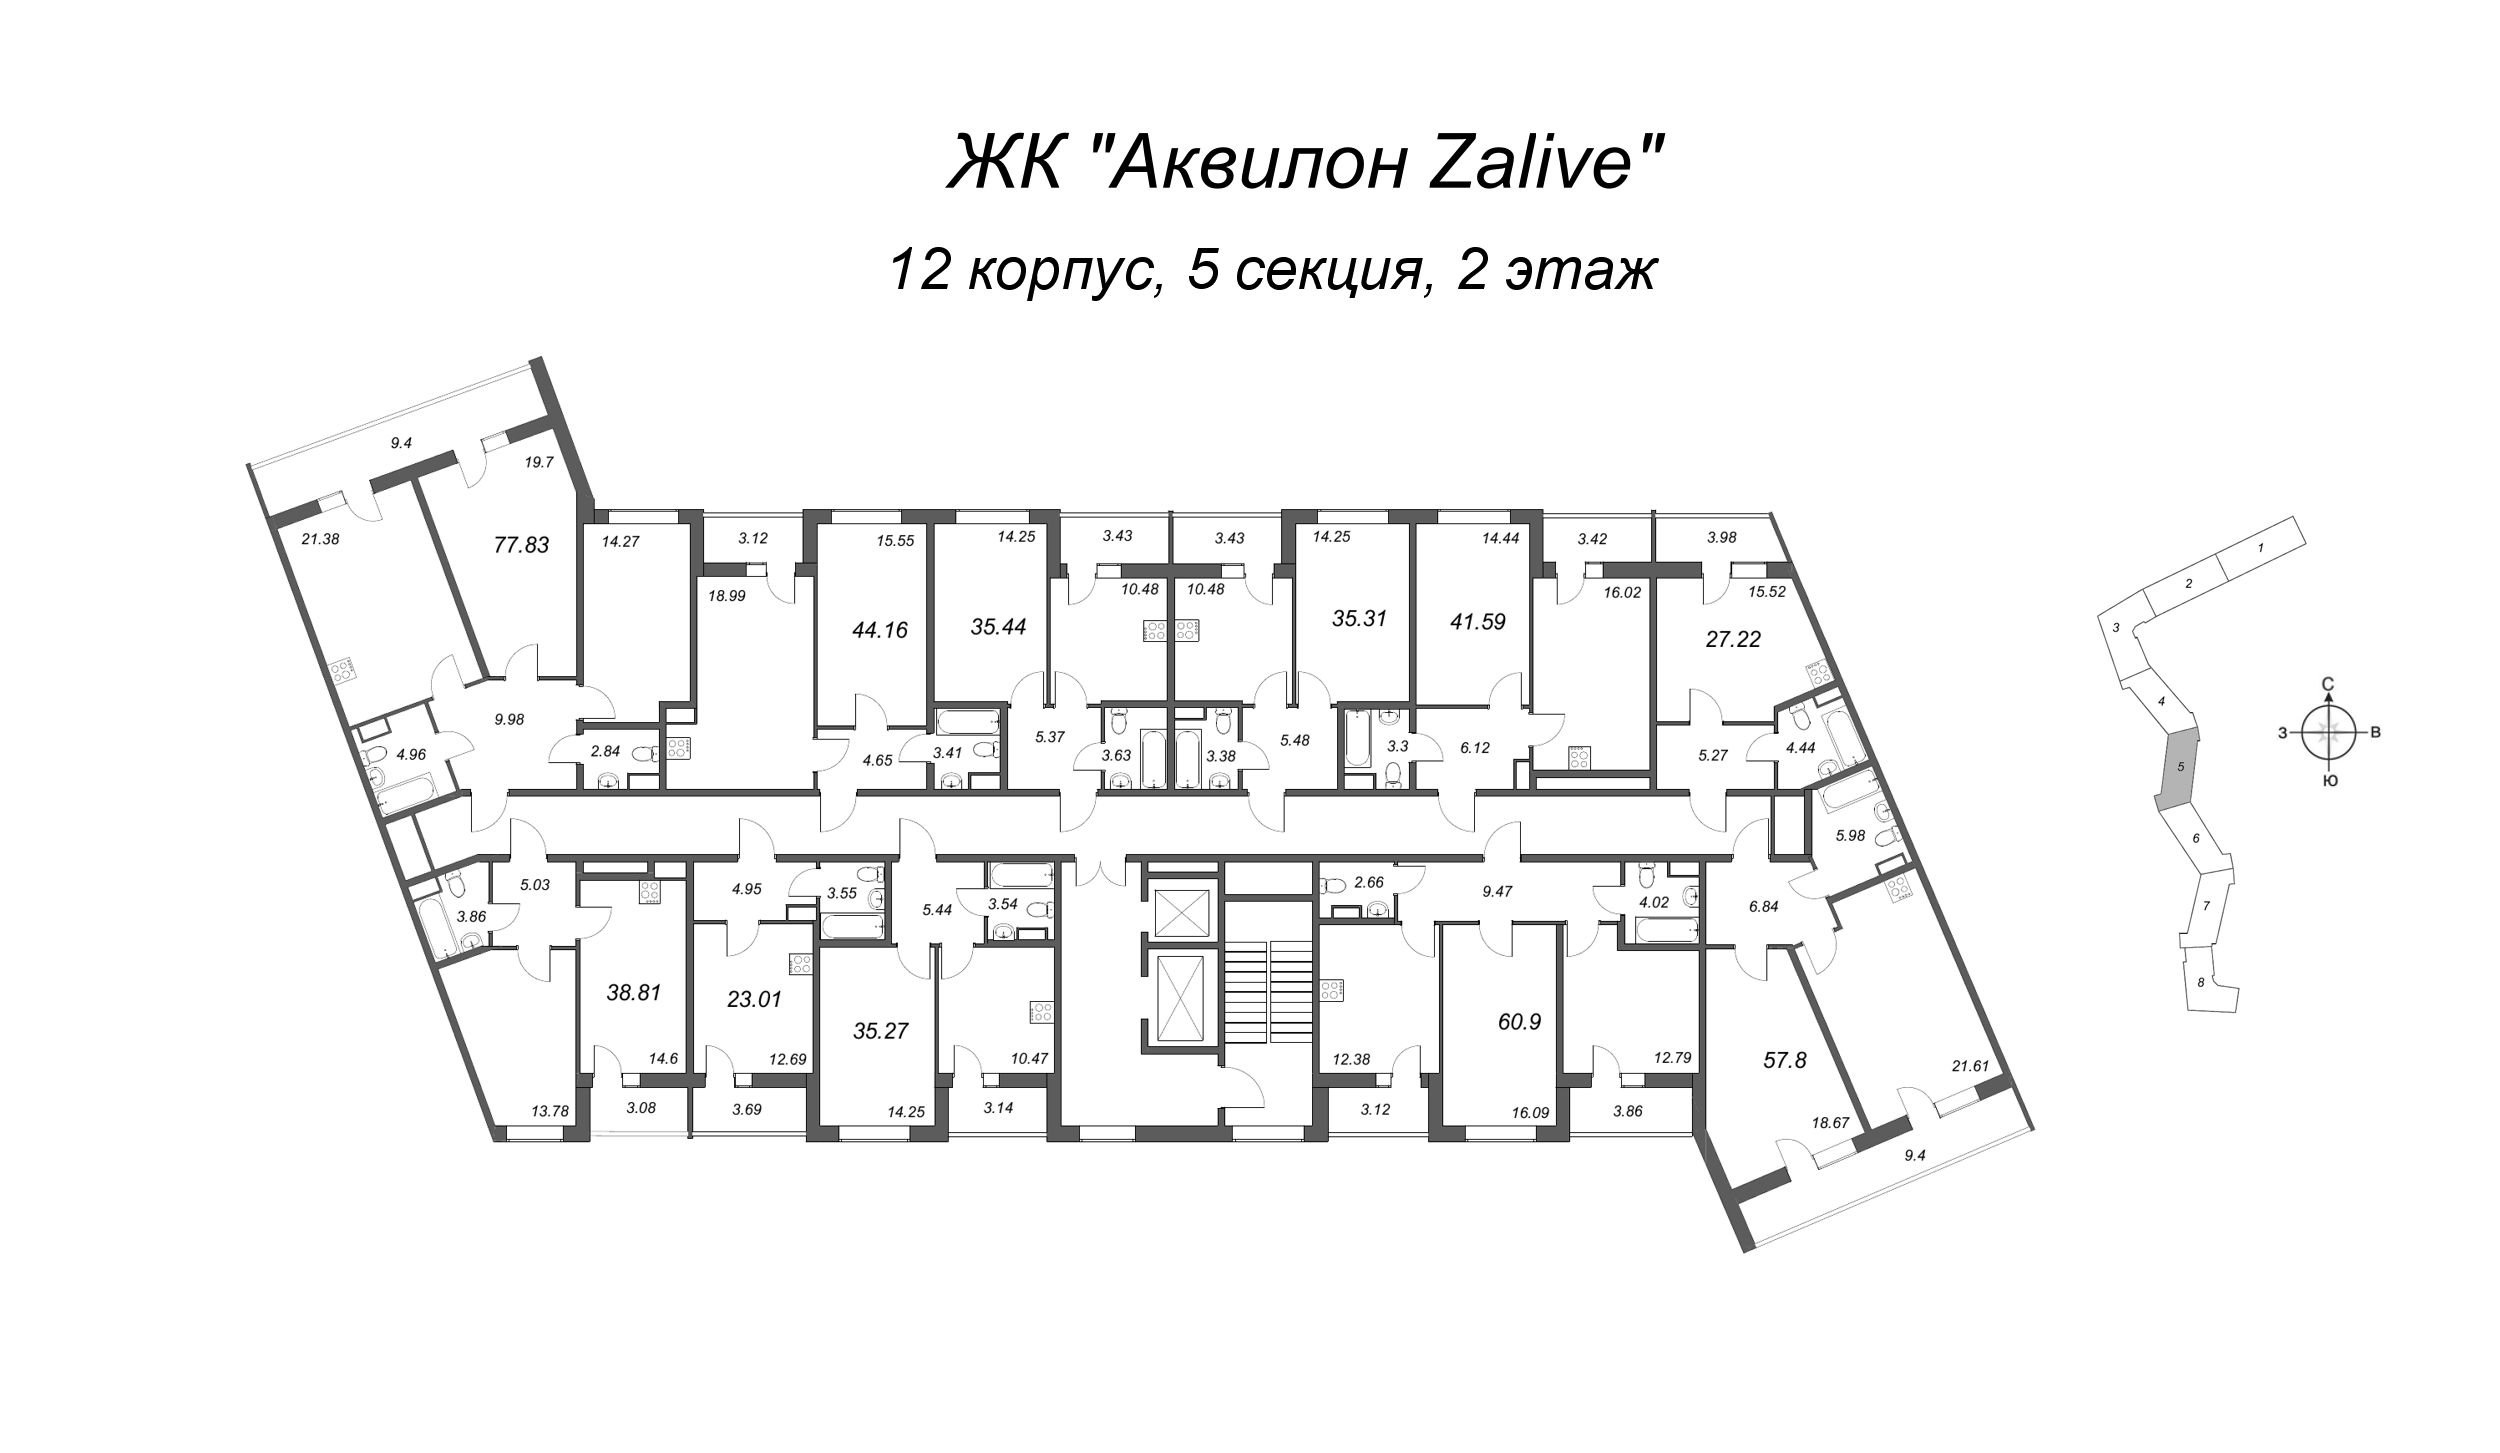 3-комнатная (Евро) квартира, 77.6 м² в ЖК "Аквилон Zalive" - планировка этажа